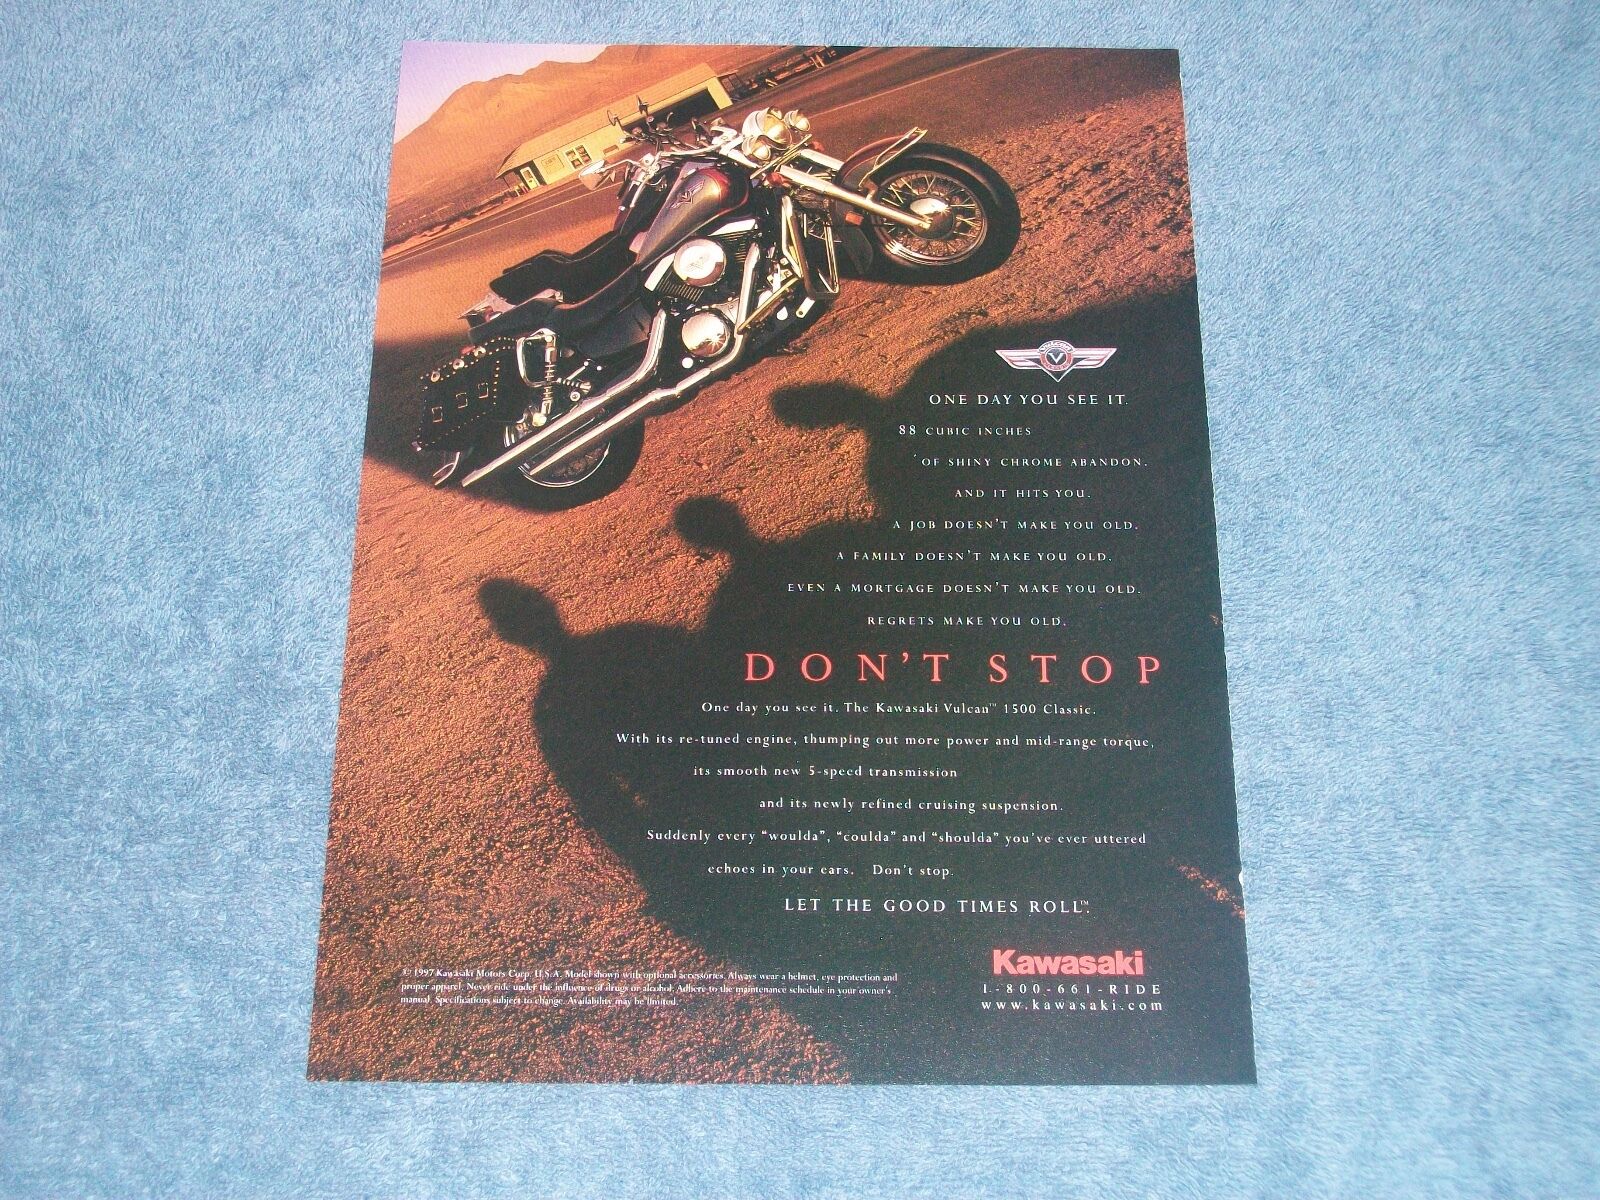 1998 Kawasaki Vulcan 1500 Classic Vintage Motorcycle Ad \